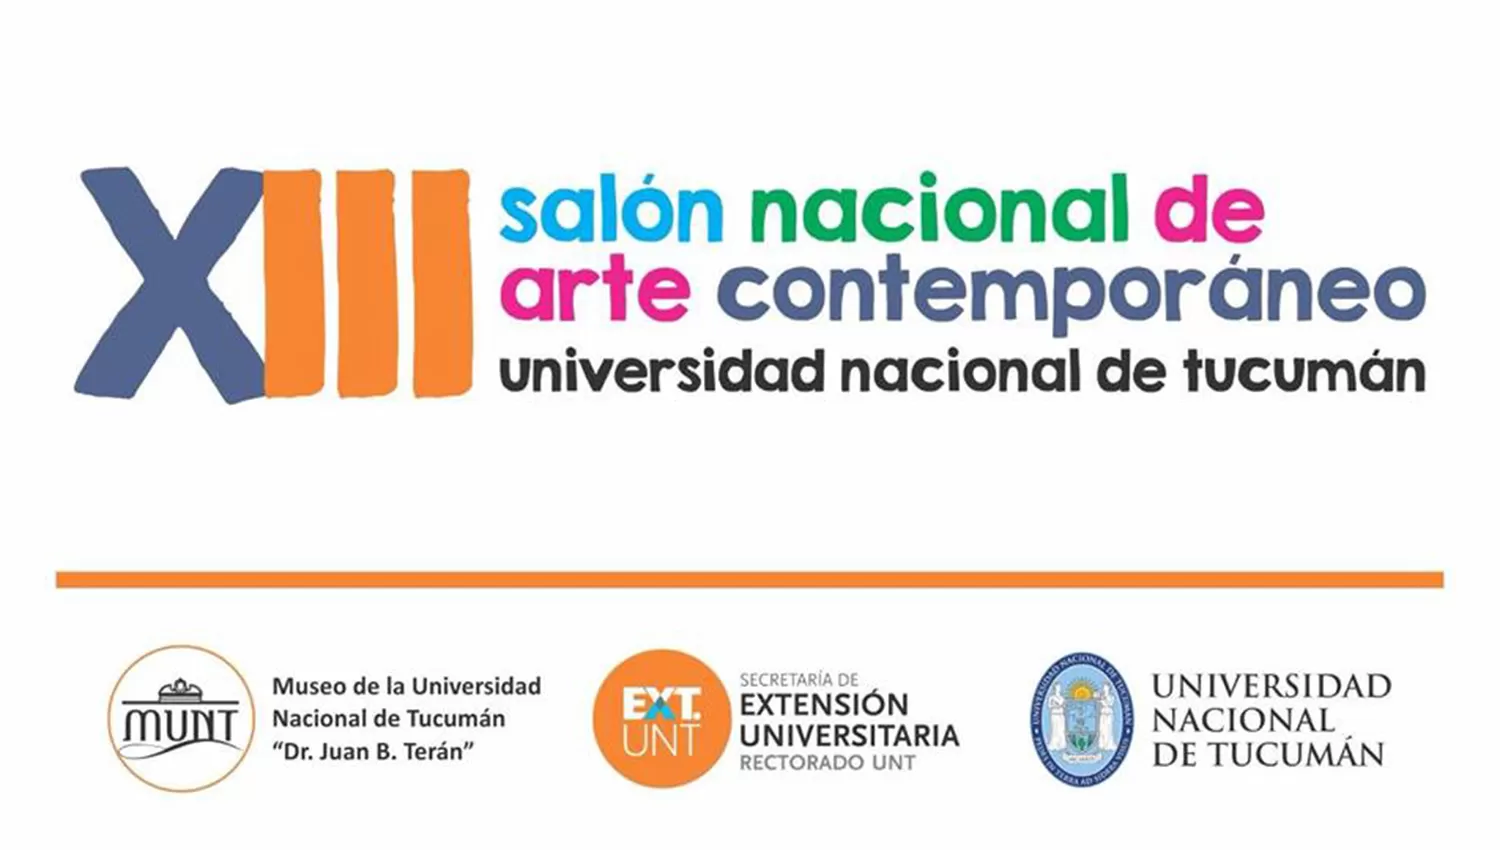 Mañana cierra la convocatoria al XIII Salón Nacional de Arte Contemporáneo